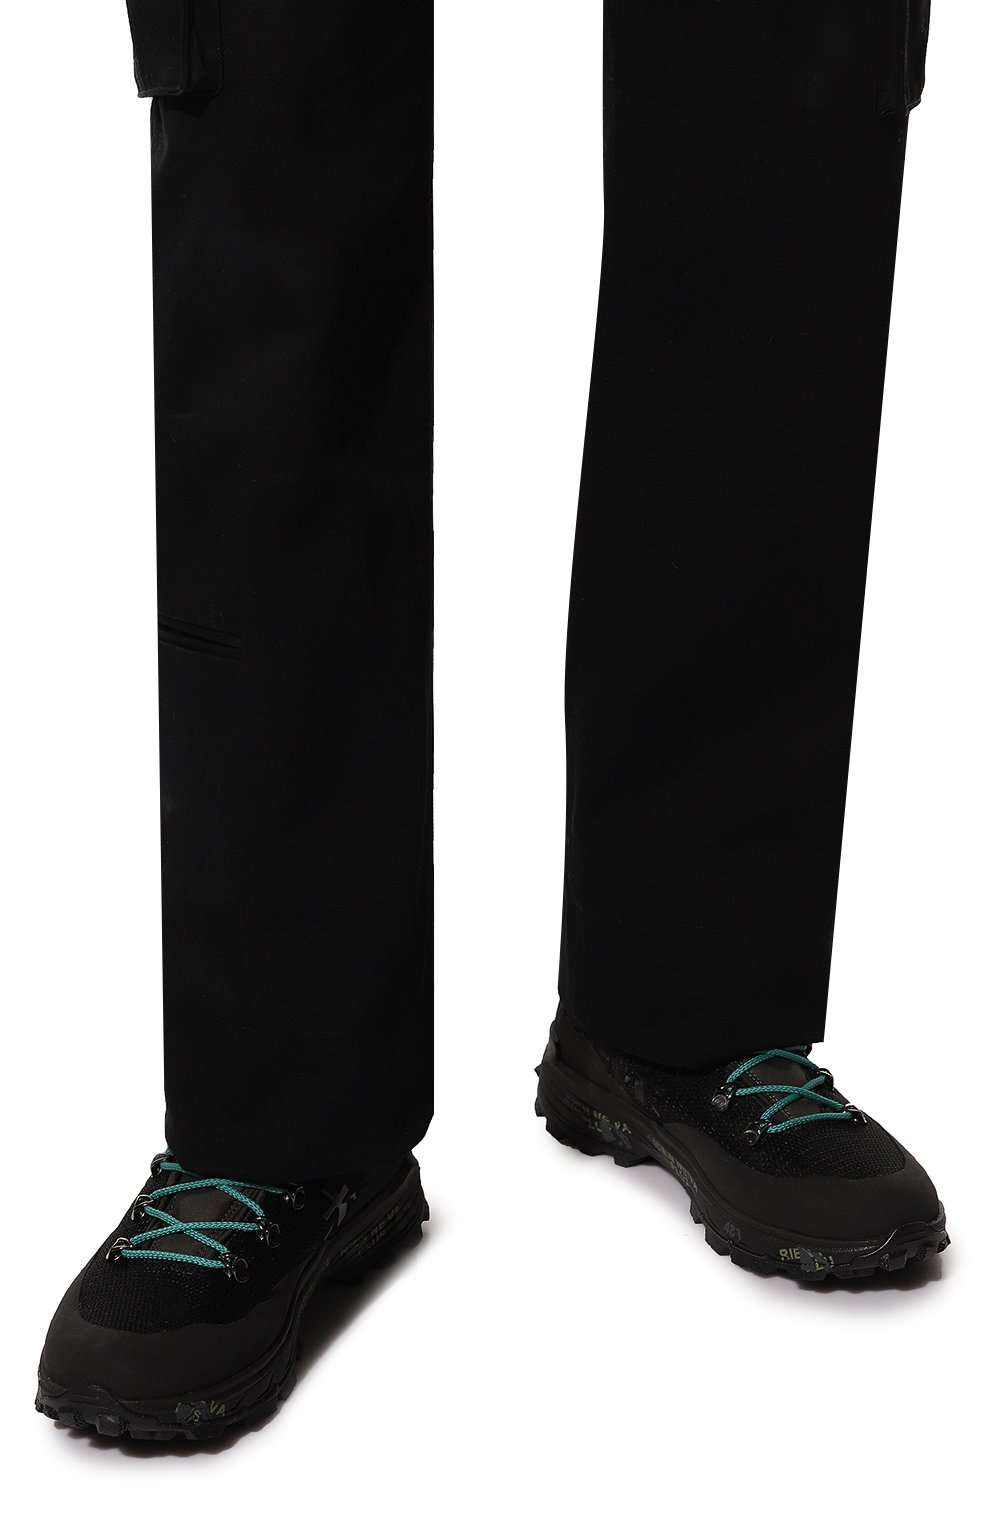 Текстильные ботинки Mid-Treck Premiata MIDTRECK/VAR283, цвет чёрный, размер 40 MIDTRECK/VAR283 - фото 3